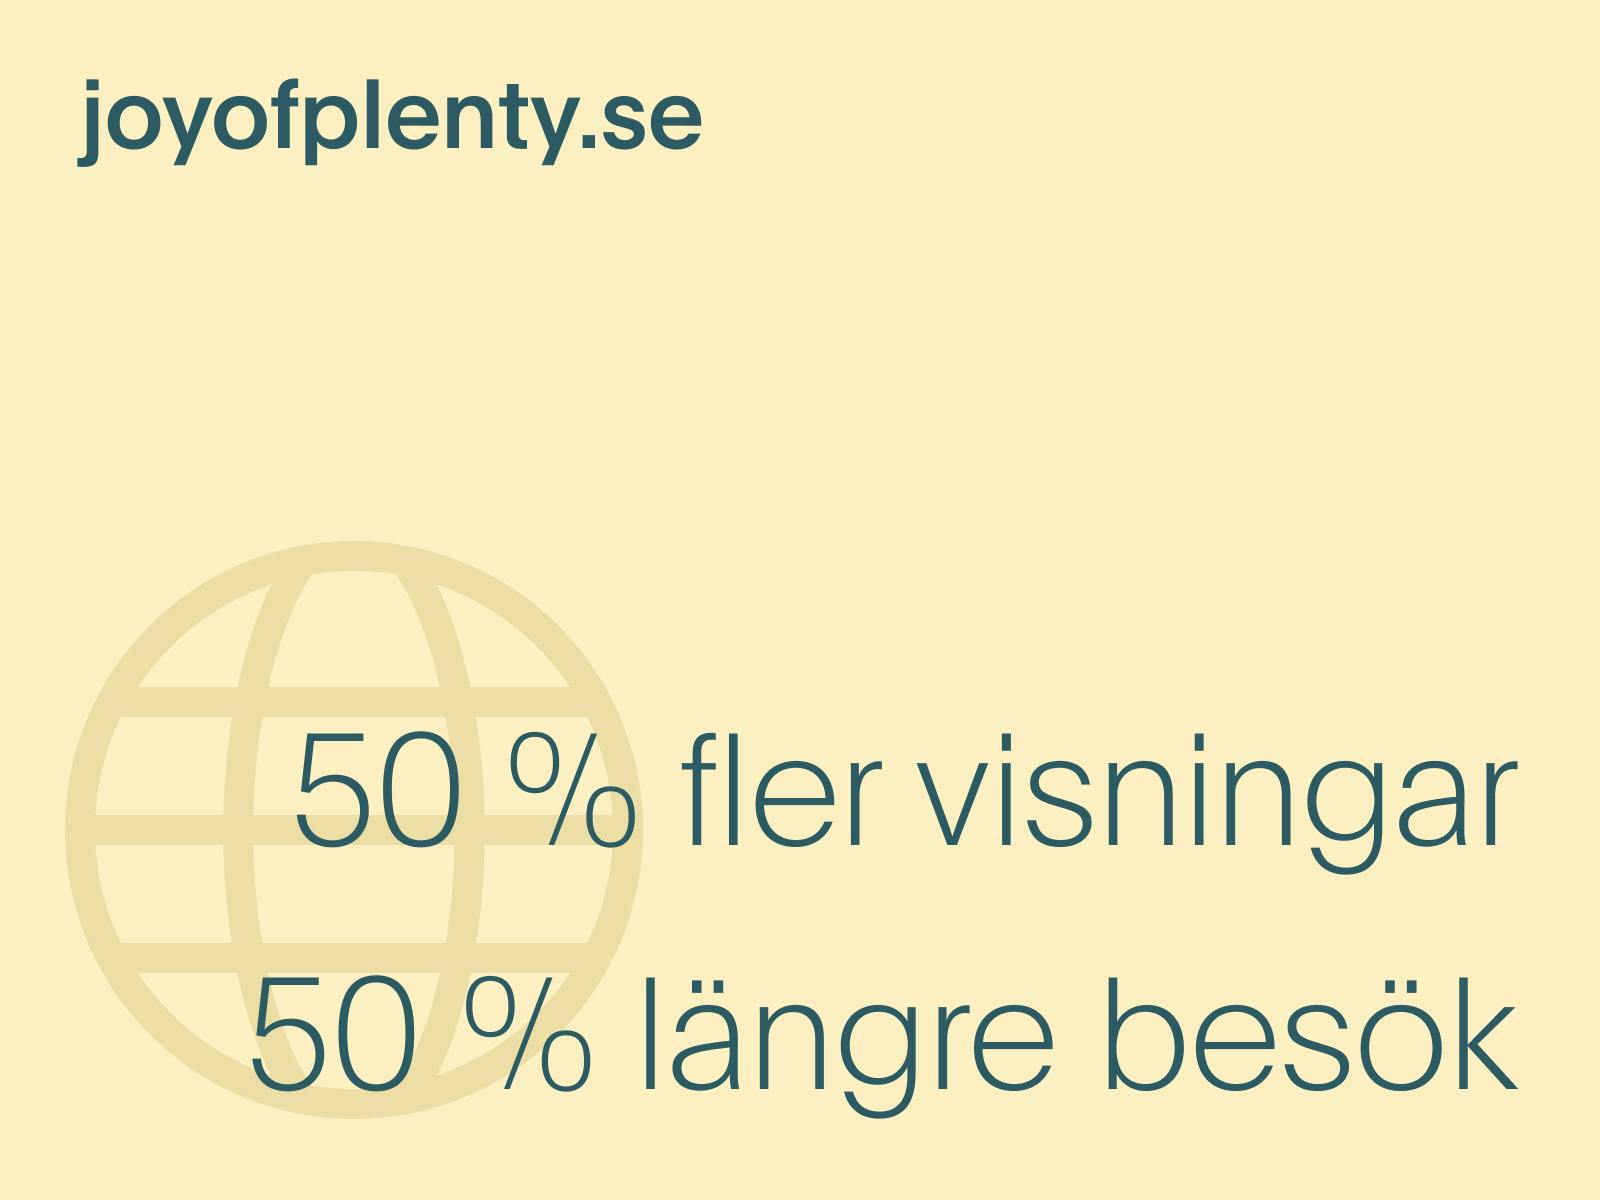 joyofplenty.se har besökts av 50 % fler och haft 50 % längre besök